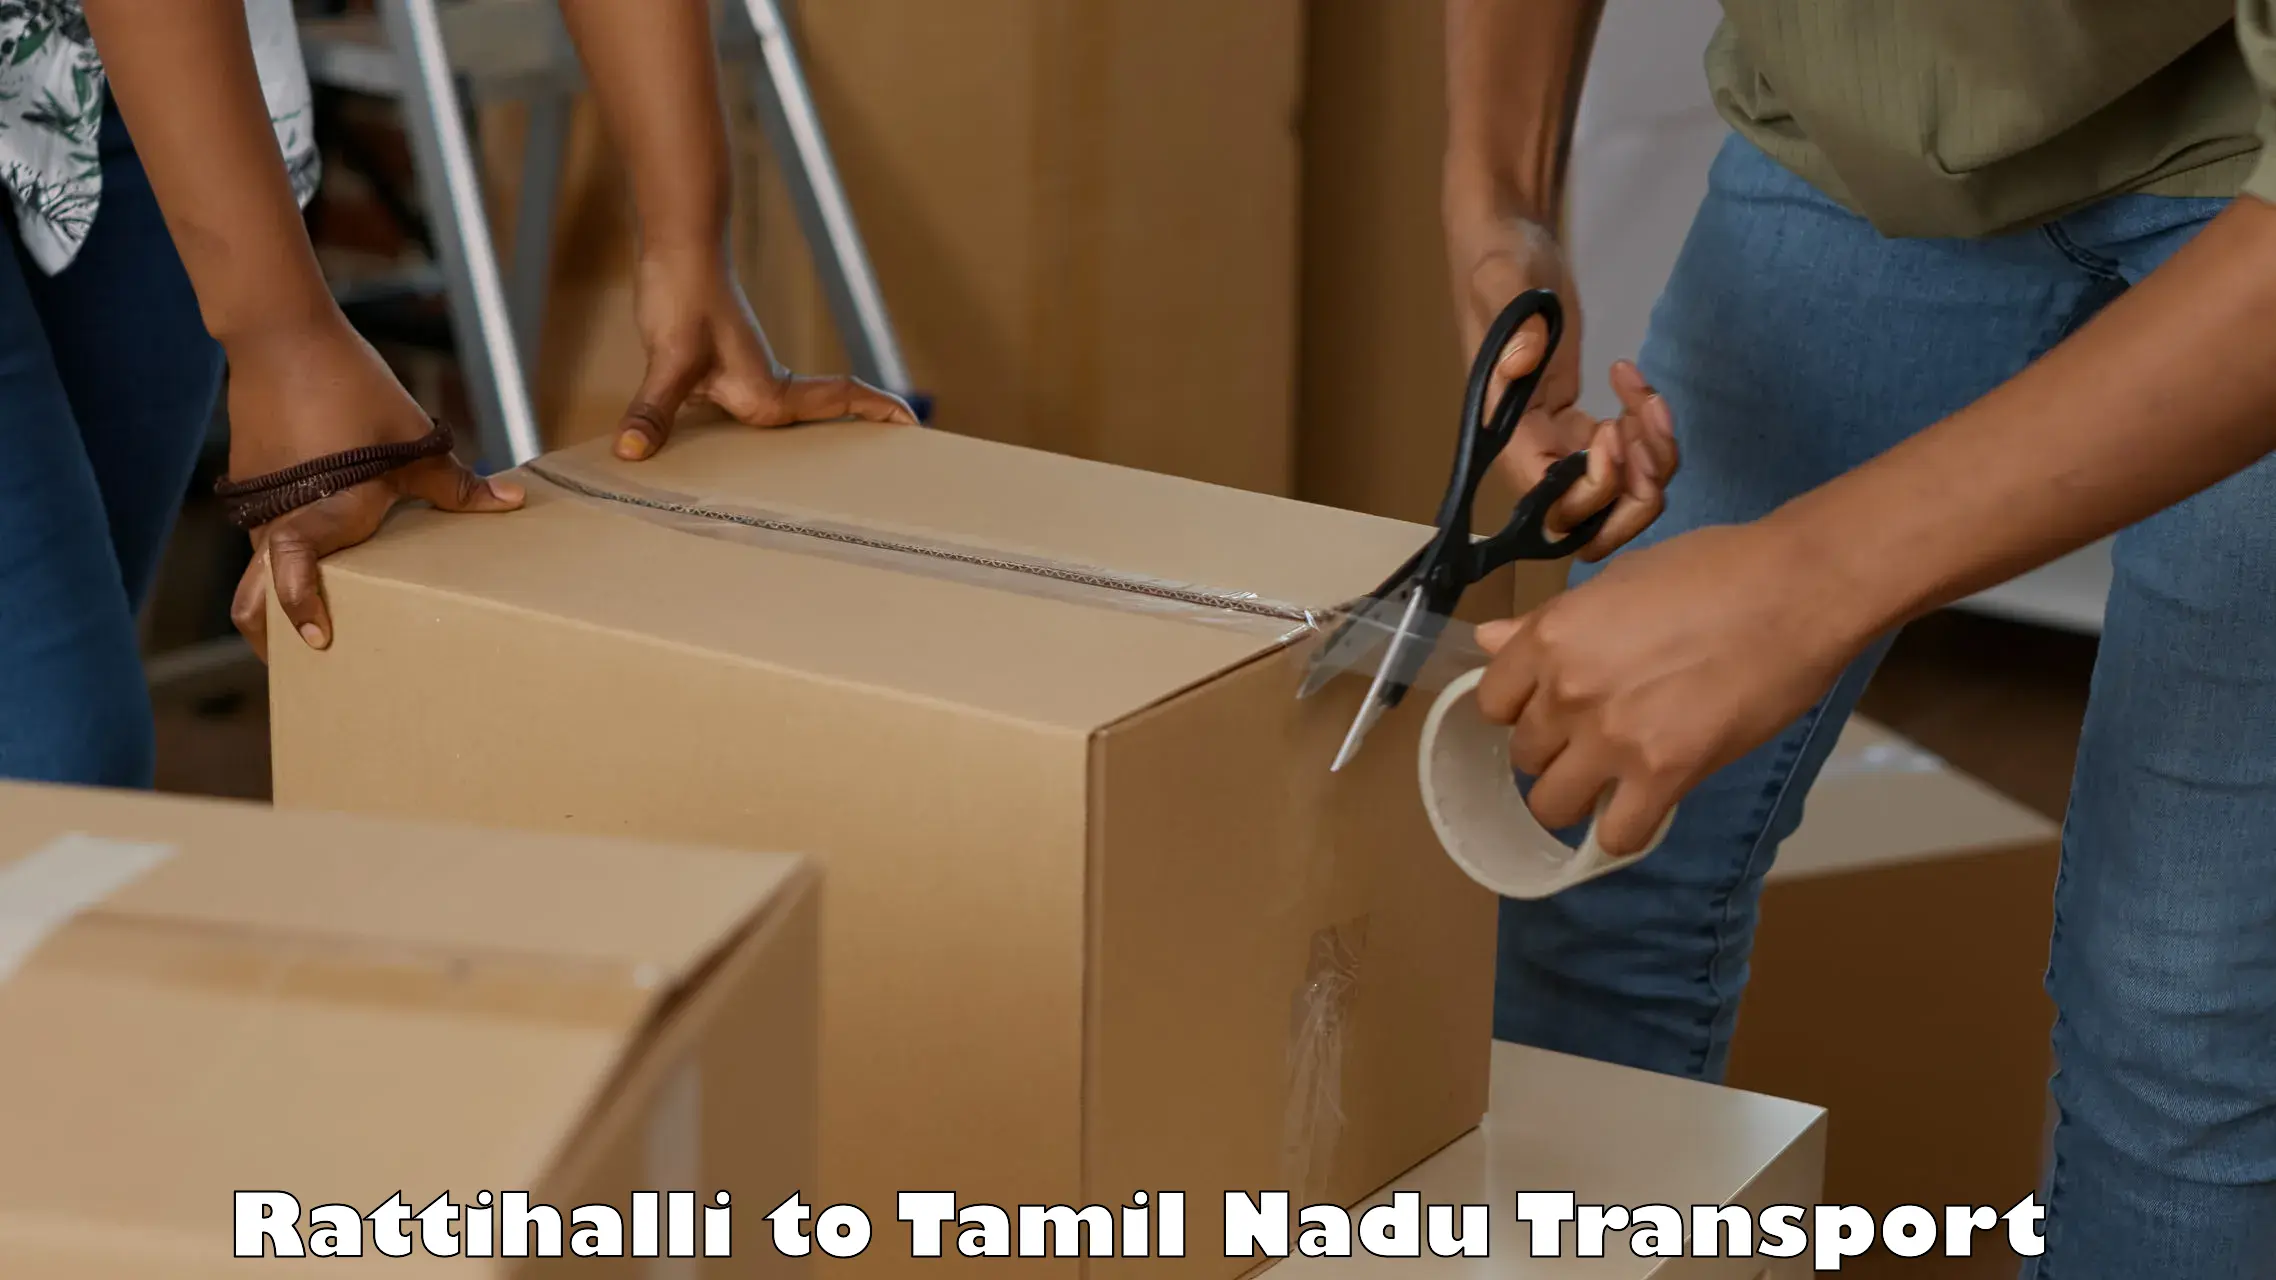 Nearest transport service Rattihalli to IIT Madras